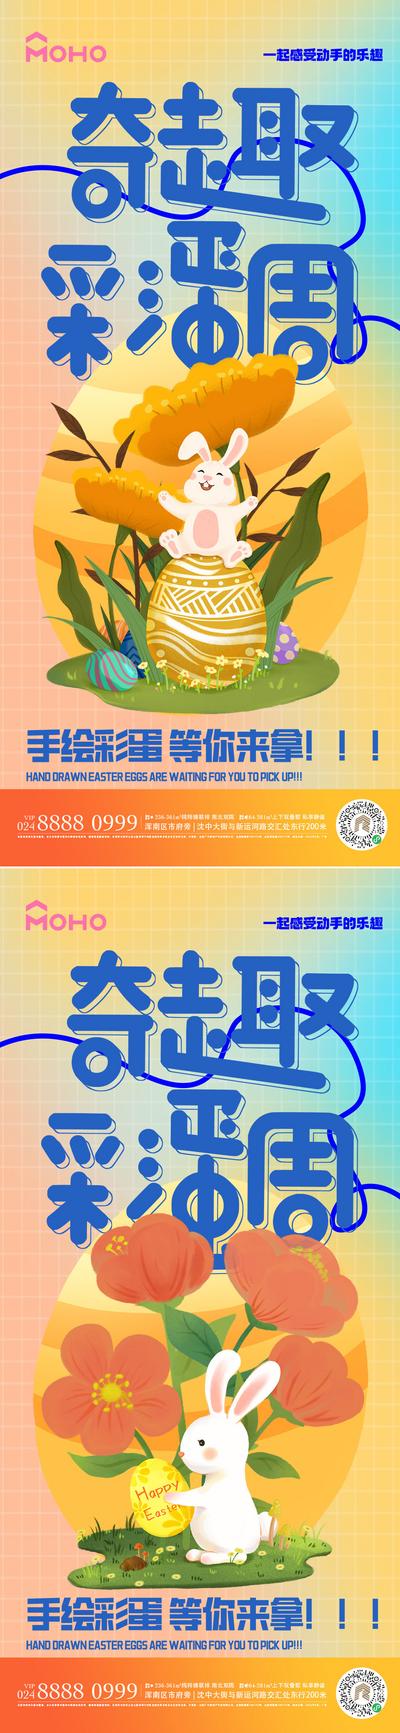 南门网 海报 节气 促销 复活节 彩蛋 复活 兔子 礼物 帽子 庆祝 喜庆 游玩 娱乐